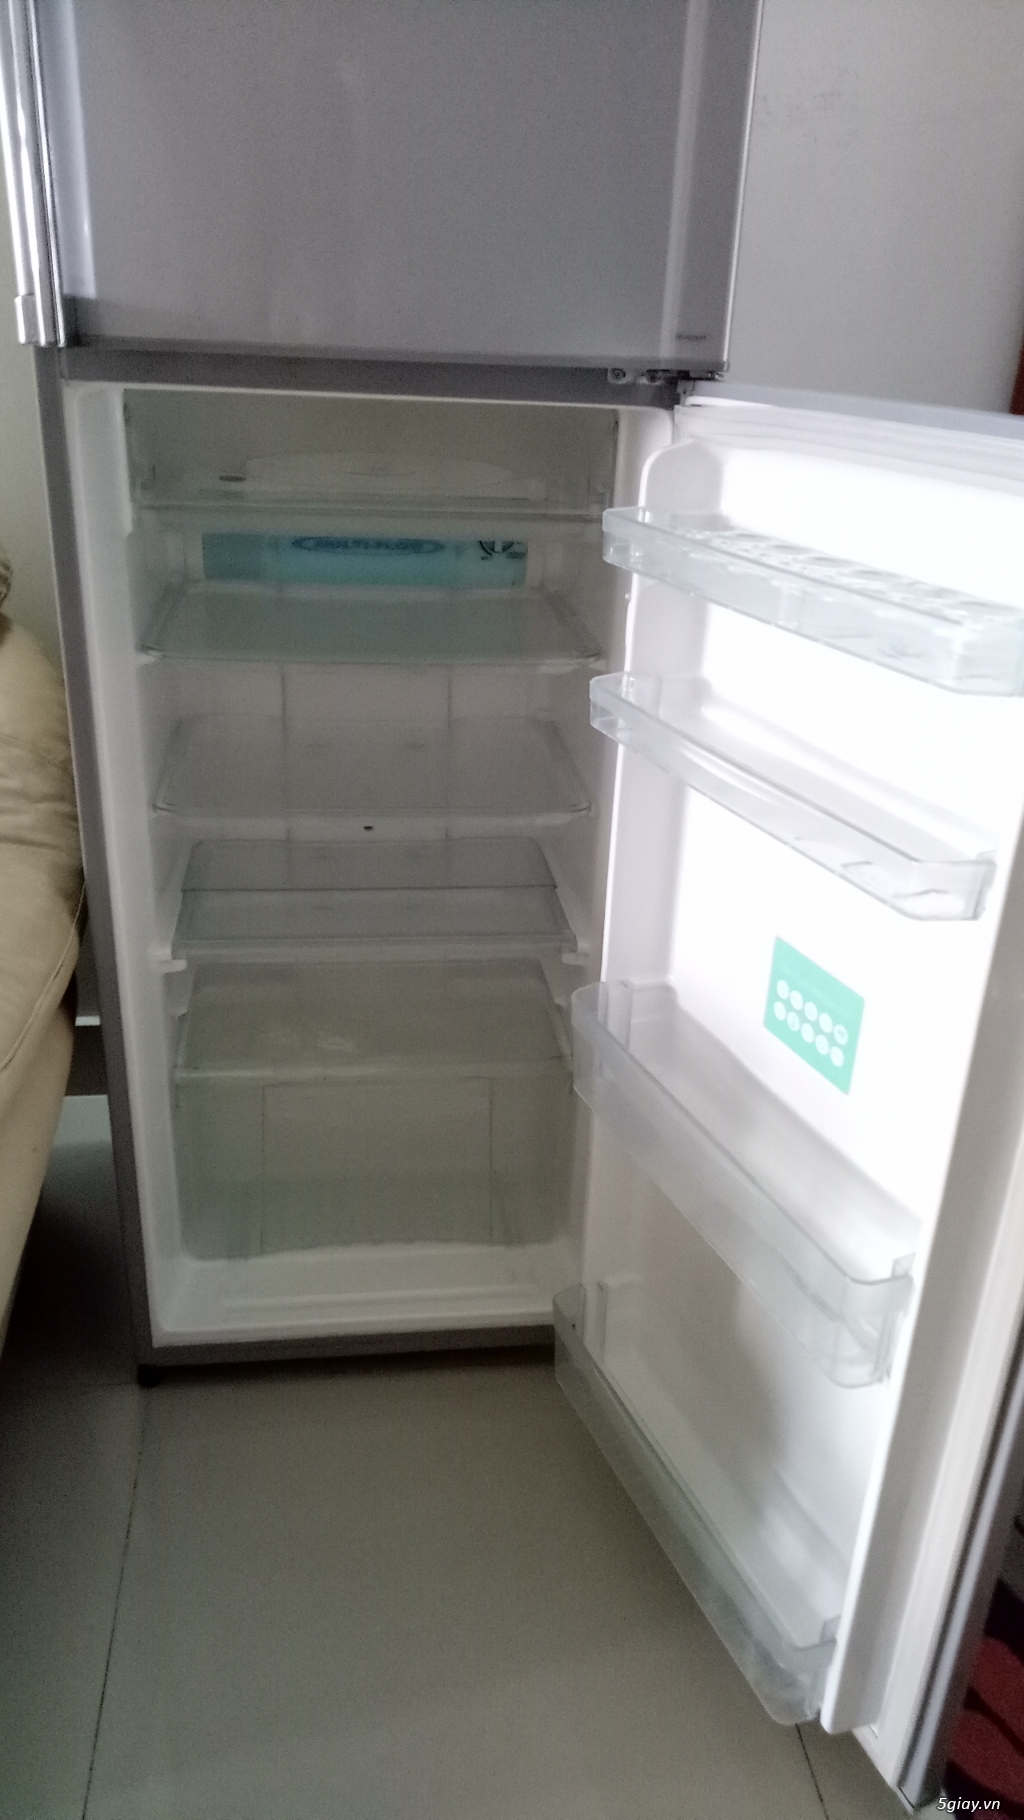 Thanh lý tủ lạnh Tosiba 230 lít - 1